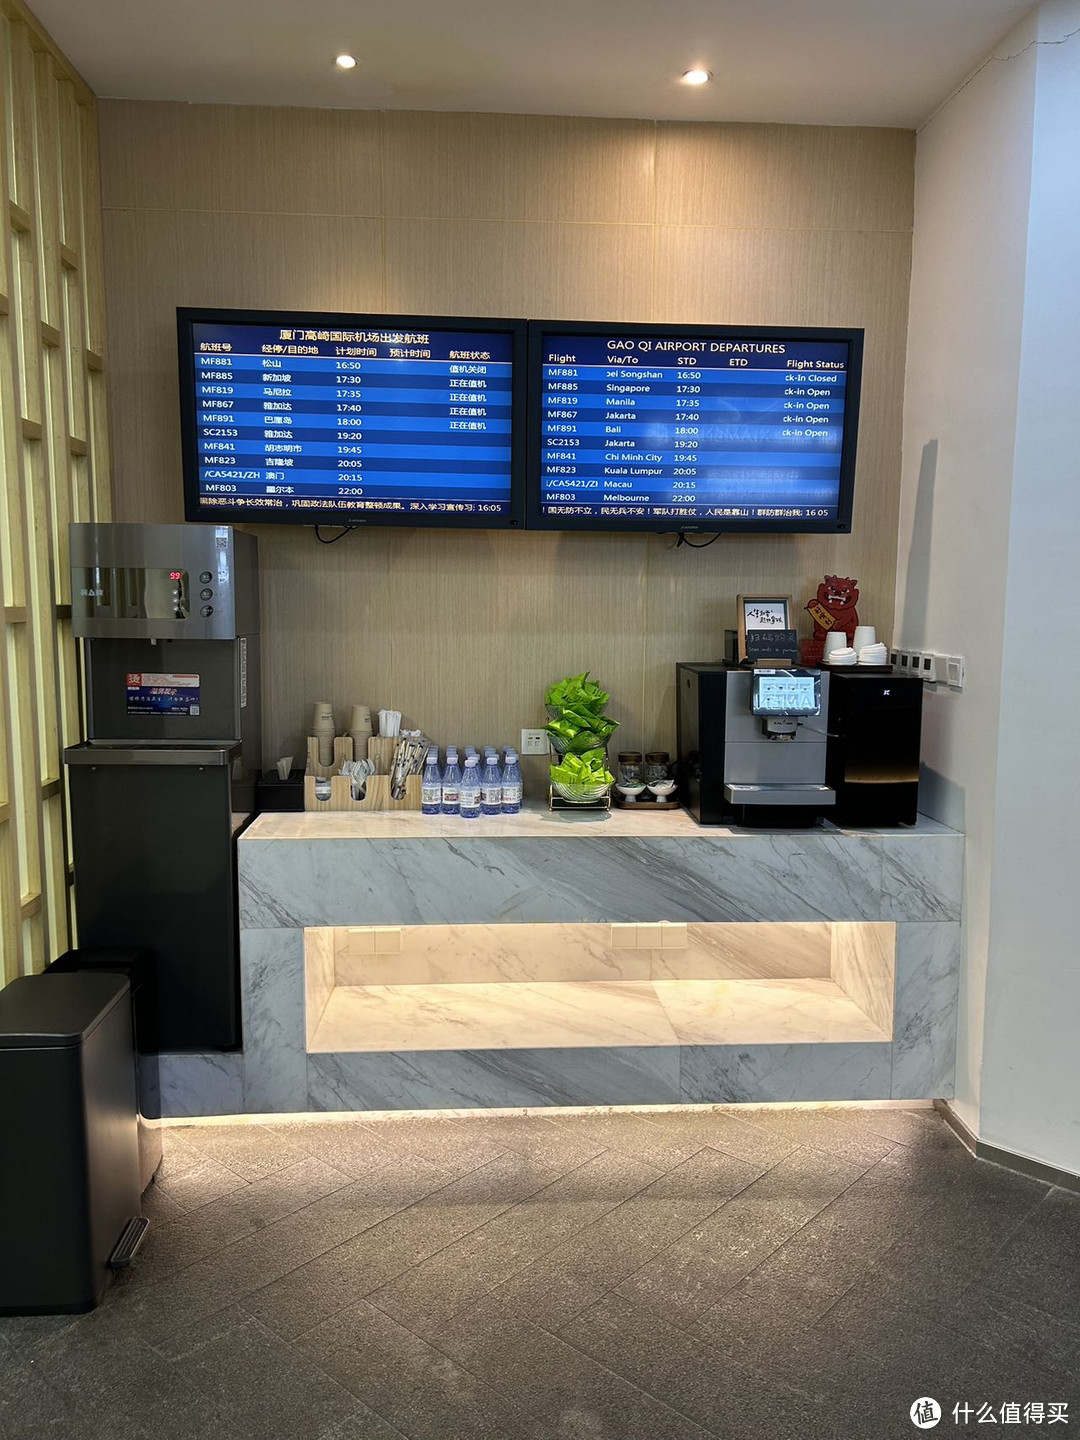 【厦门高崎机场】T3航站楼，厦门航空免费中转休息室体验分享，超详细9张图片。